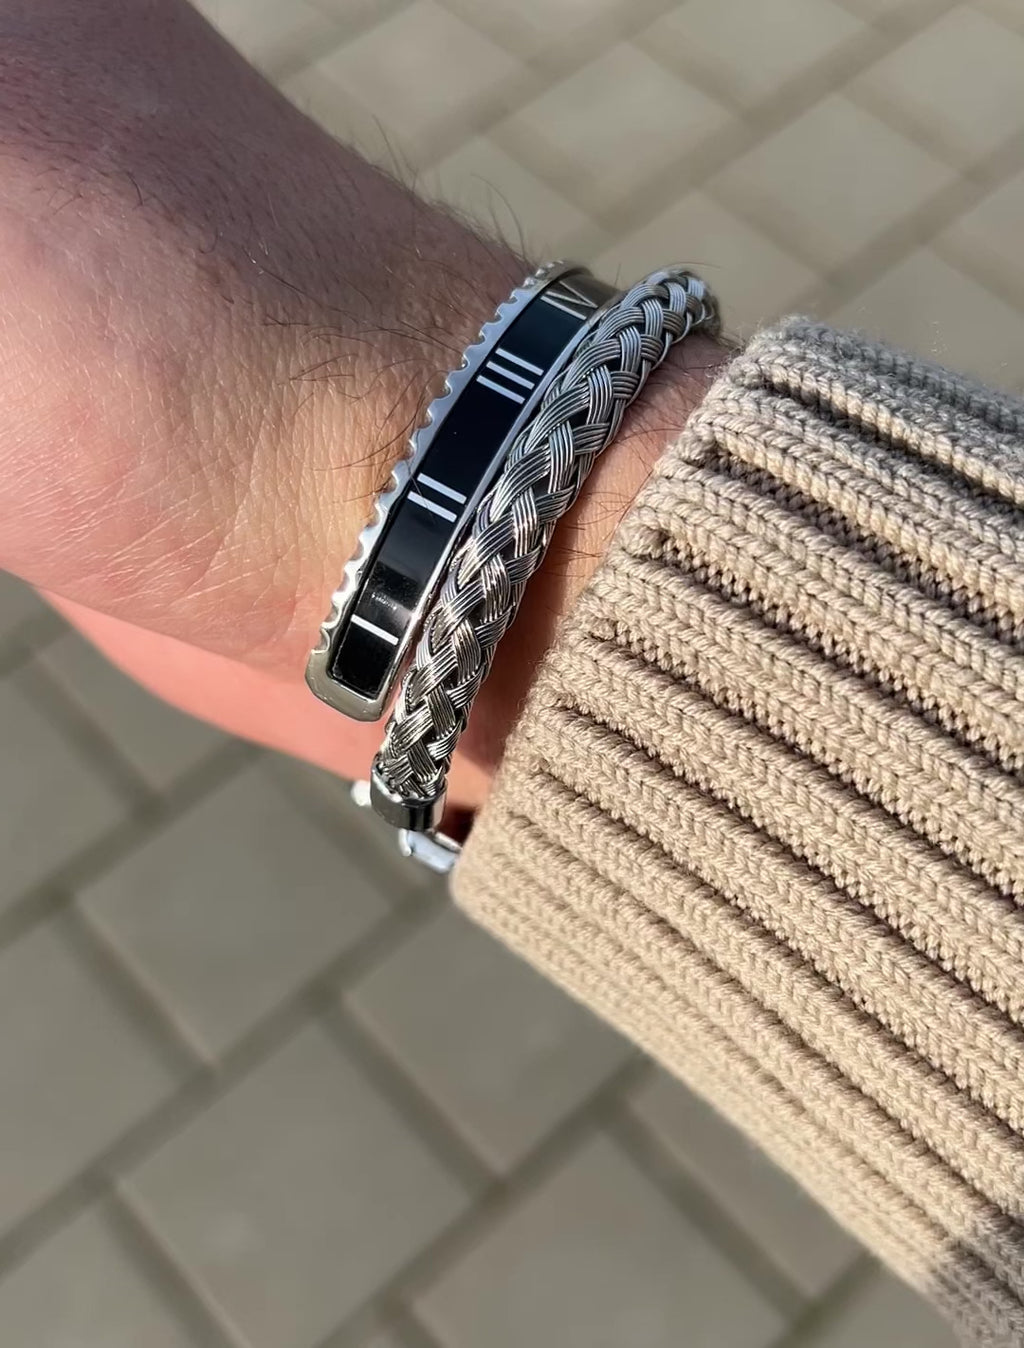 Video showing the Roman Speed bracelet black and blue Emils Jewellery bezel style bracelet